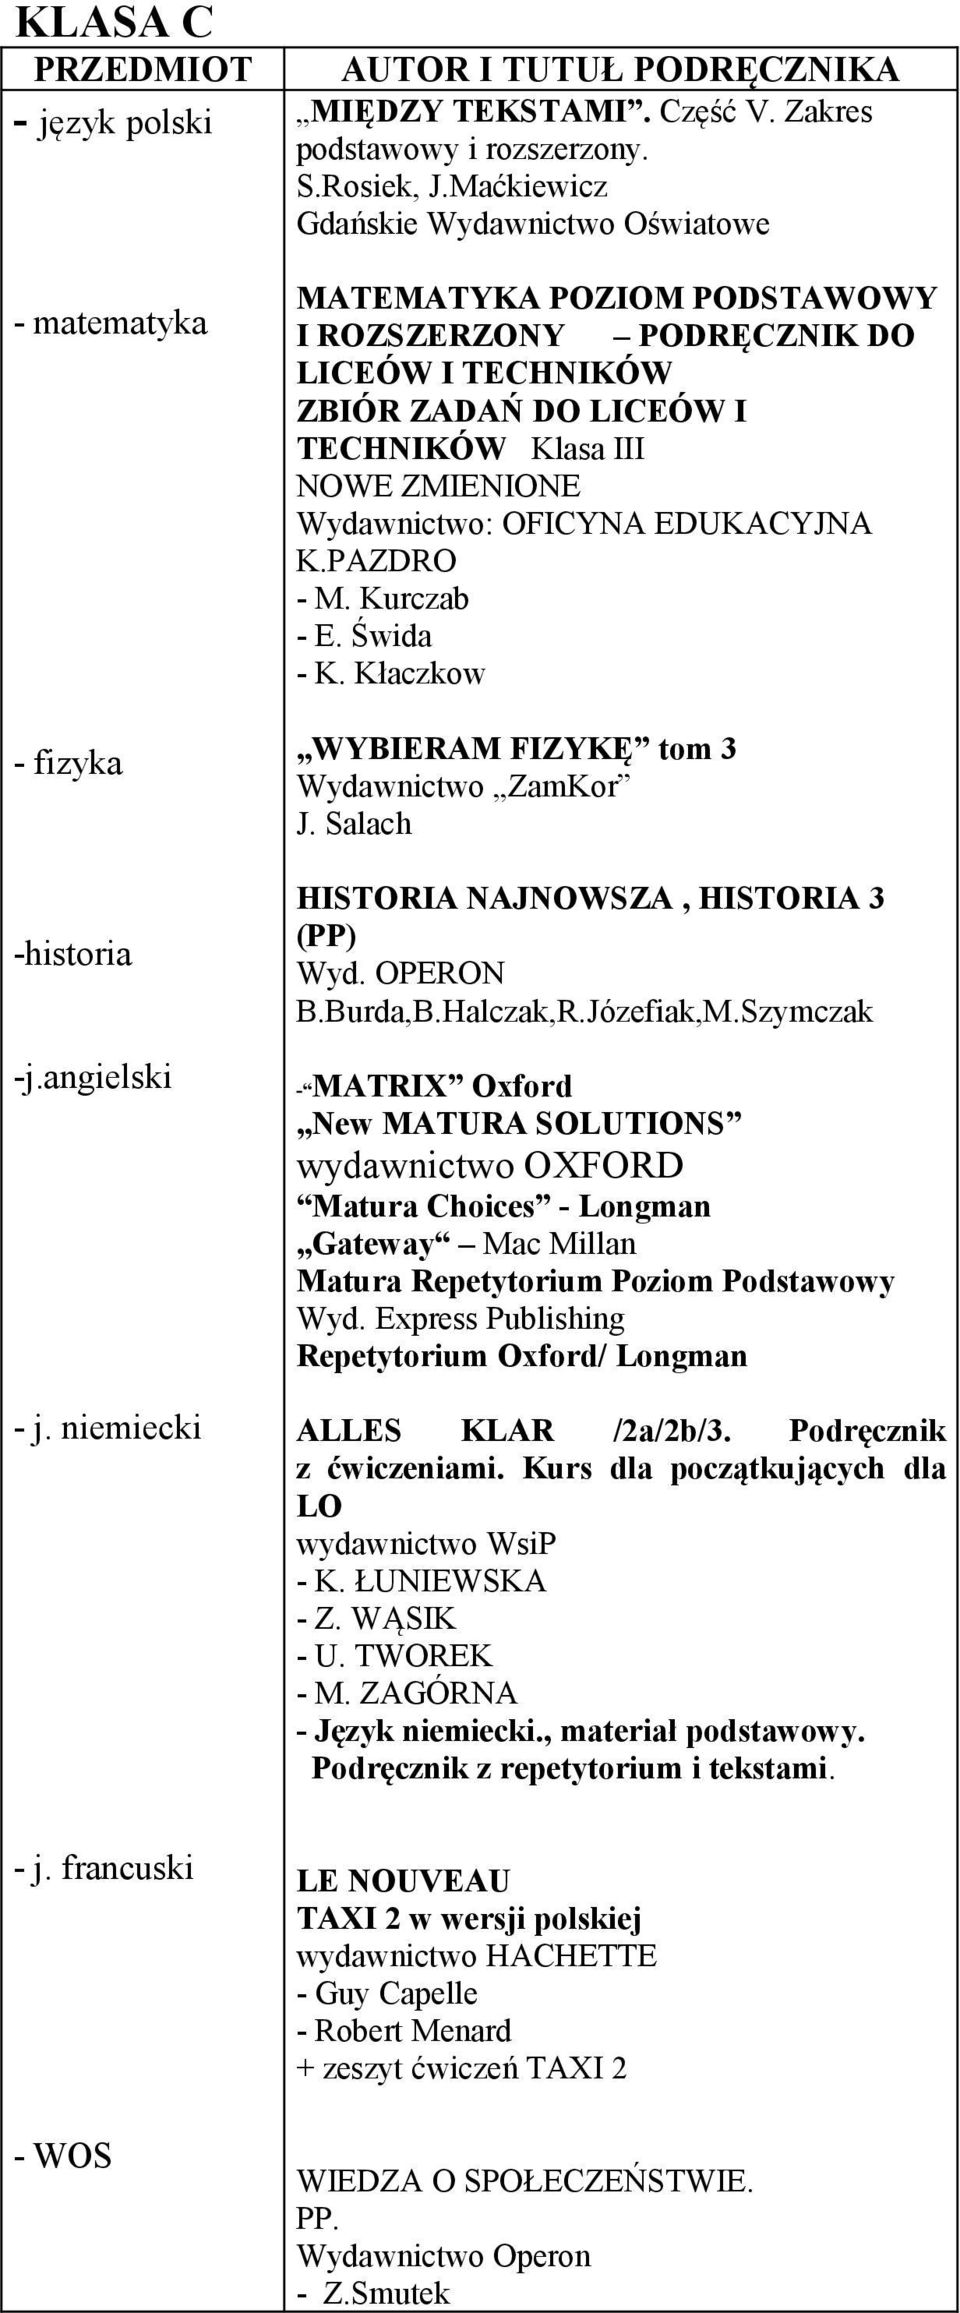 Kurczab - E. Świda - K. Kłaczkow WYBIERAM FIZYKĘ tom 3 Wydawnictwo ZamKor J. Salach HISTORIA NAJNOWSZA, HISTORIA 3 (PP) Wyd. OPERON B.Burda,B.Halczak,R.Józefiak,M.